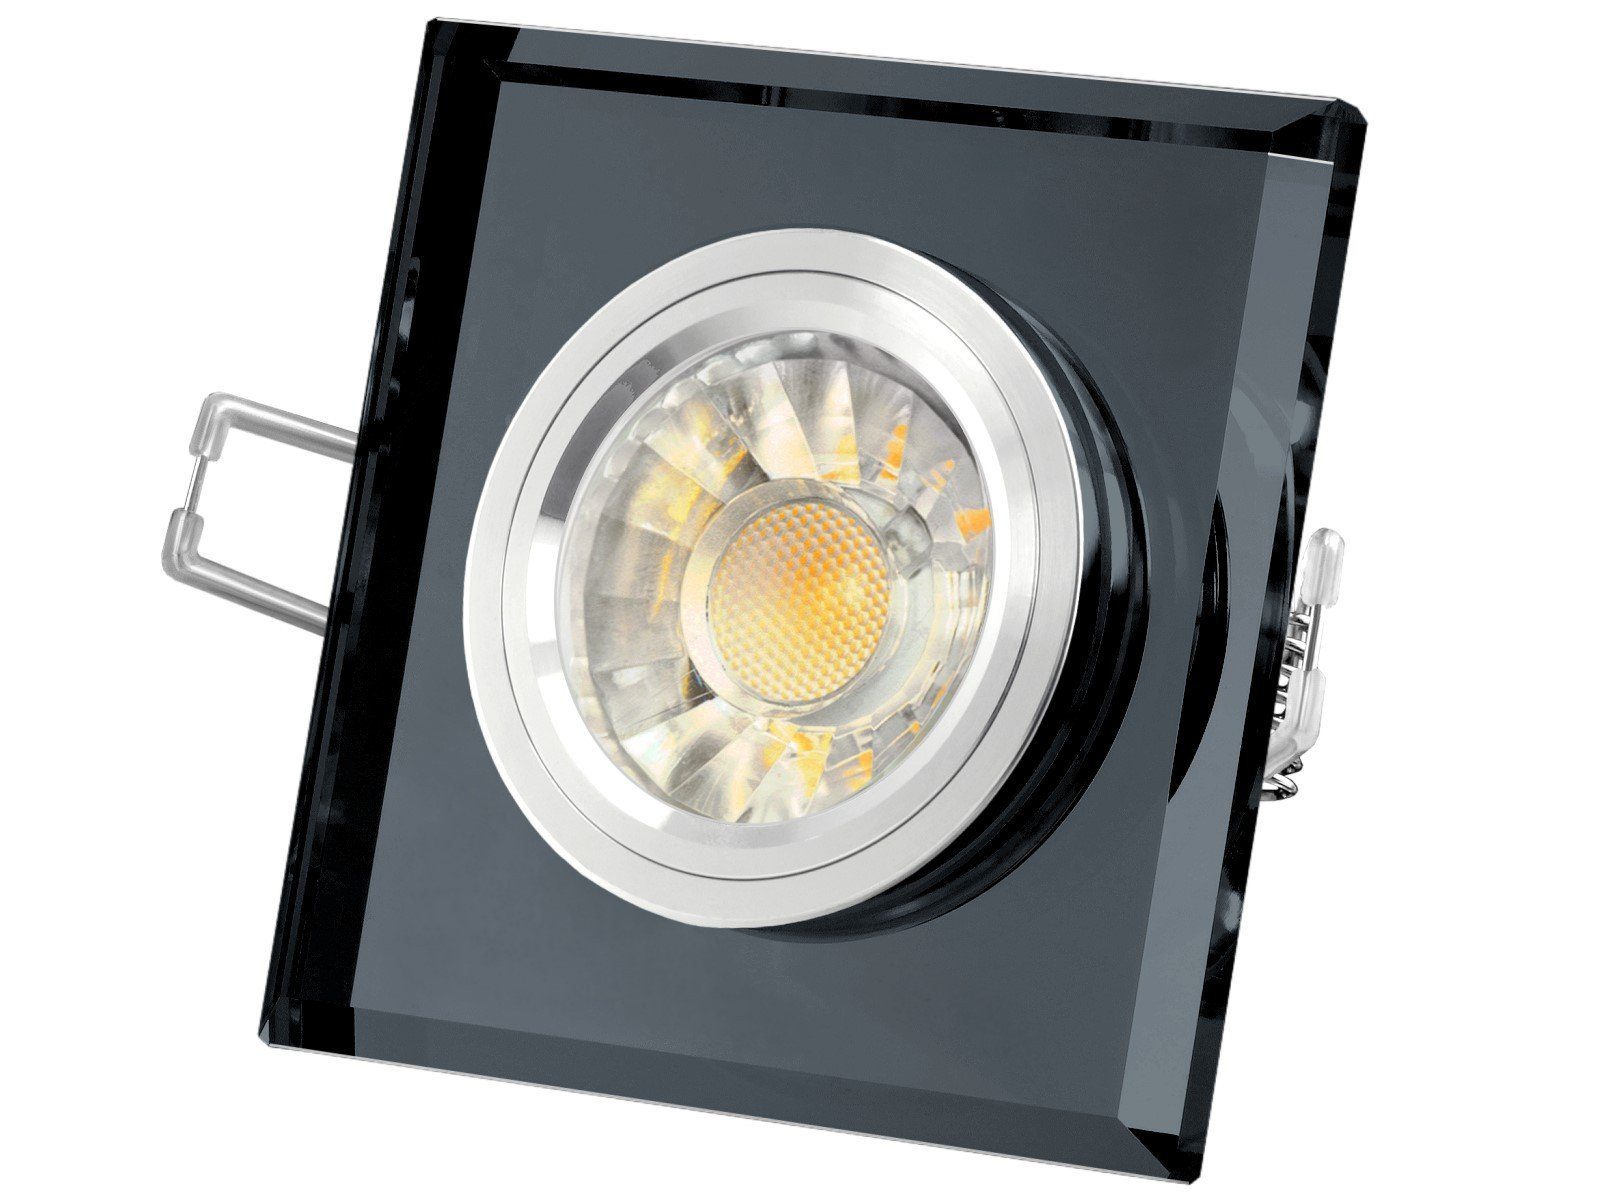 Glas SSC-LUXon spiegelnd, LED-Einbaustrahler schwarz Alu LED quadratisch, Einbaustrahler Warmweiß Innenring,